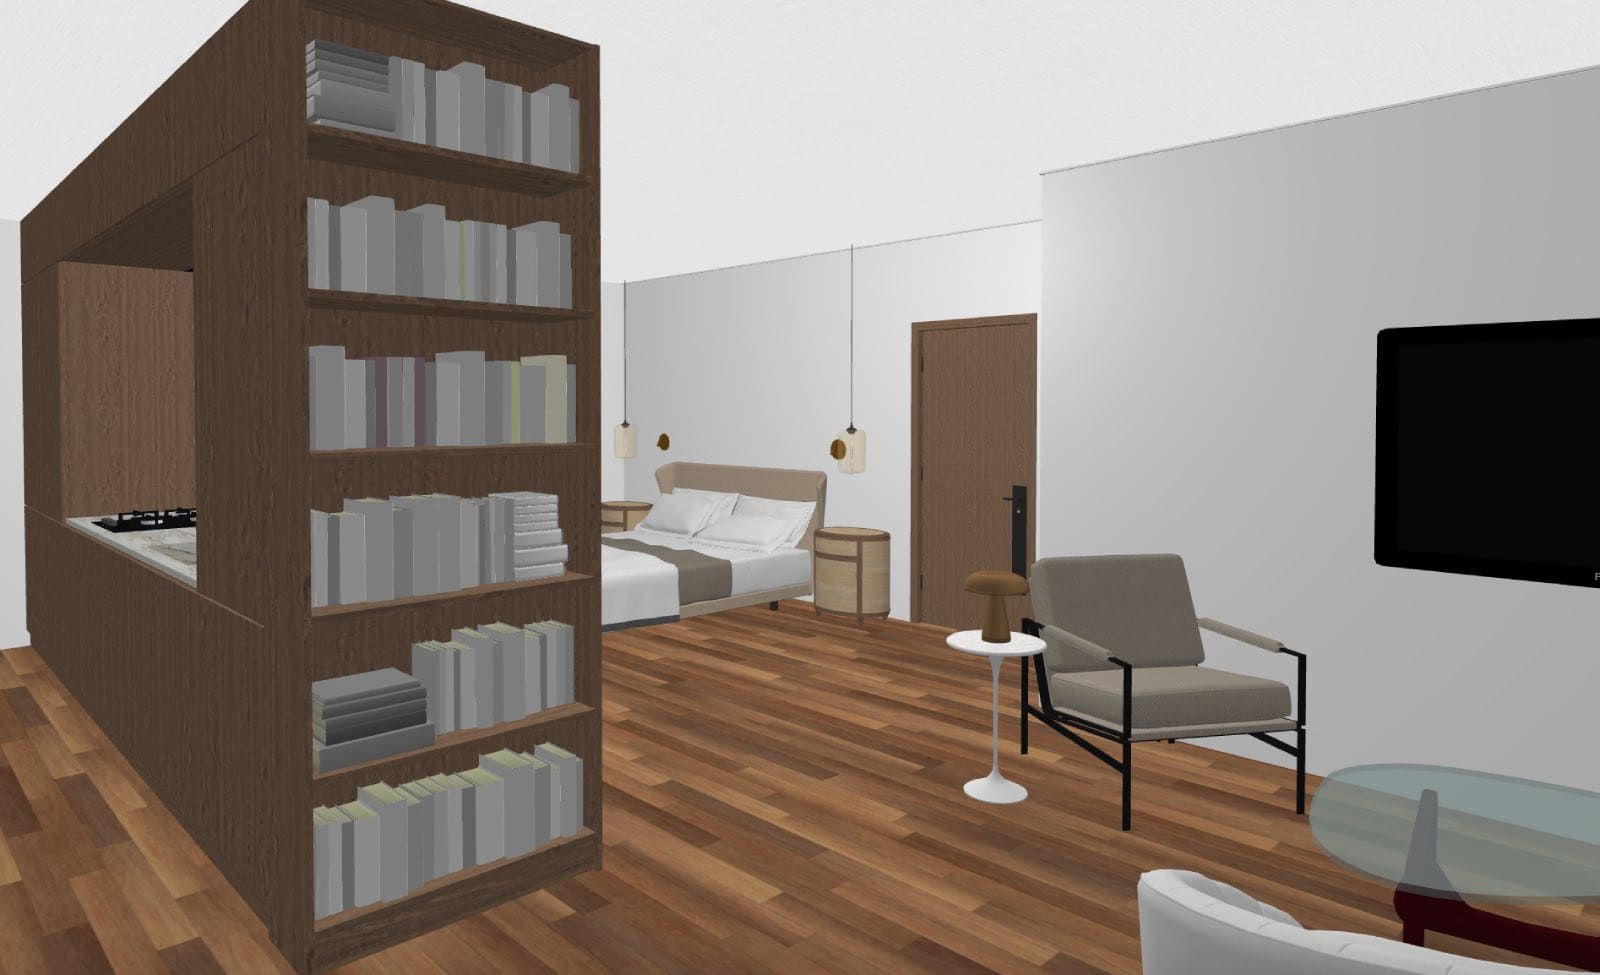 render de loft moderno creado con planner 5d cocina, sala de estar dormitorio